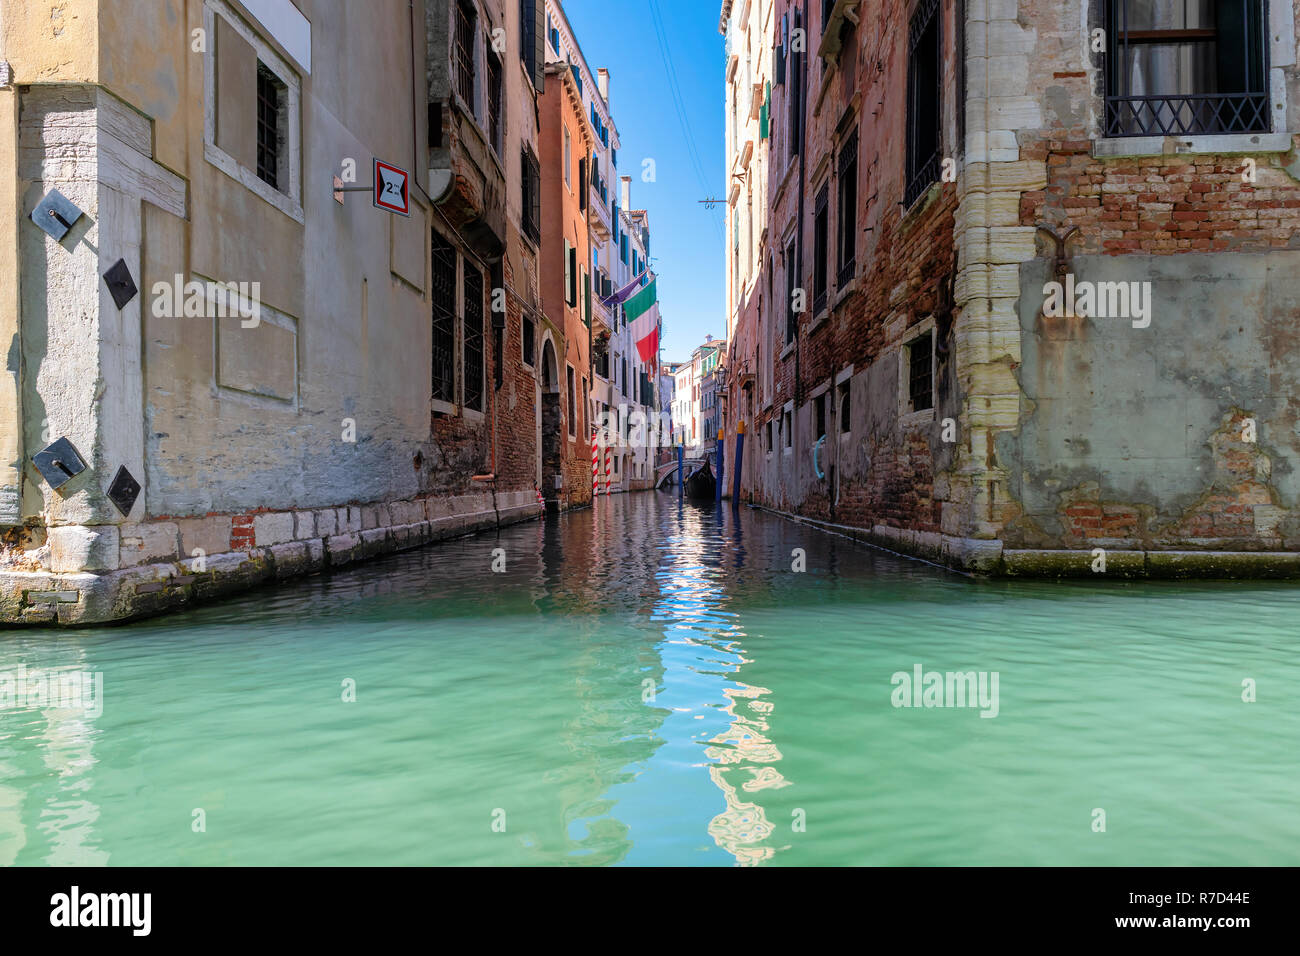 Venice Canal - Venice, Italy Stock Photo